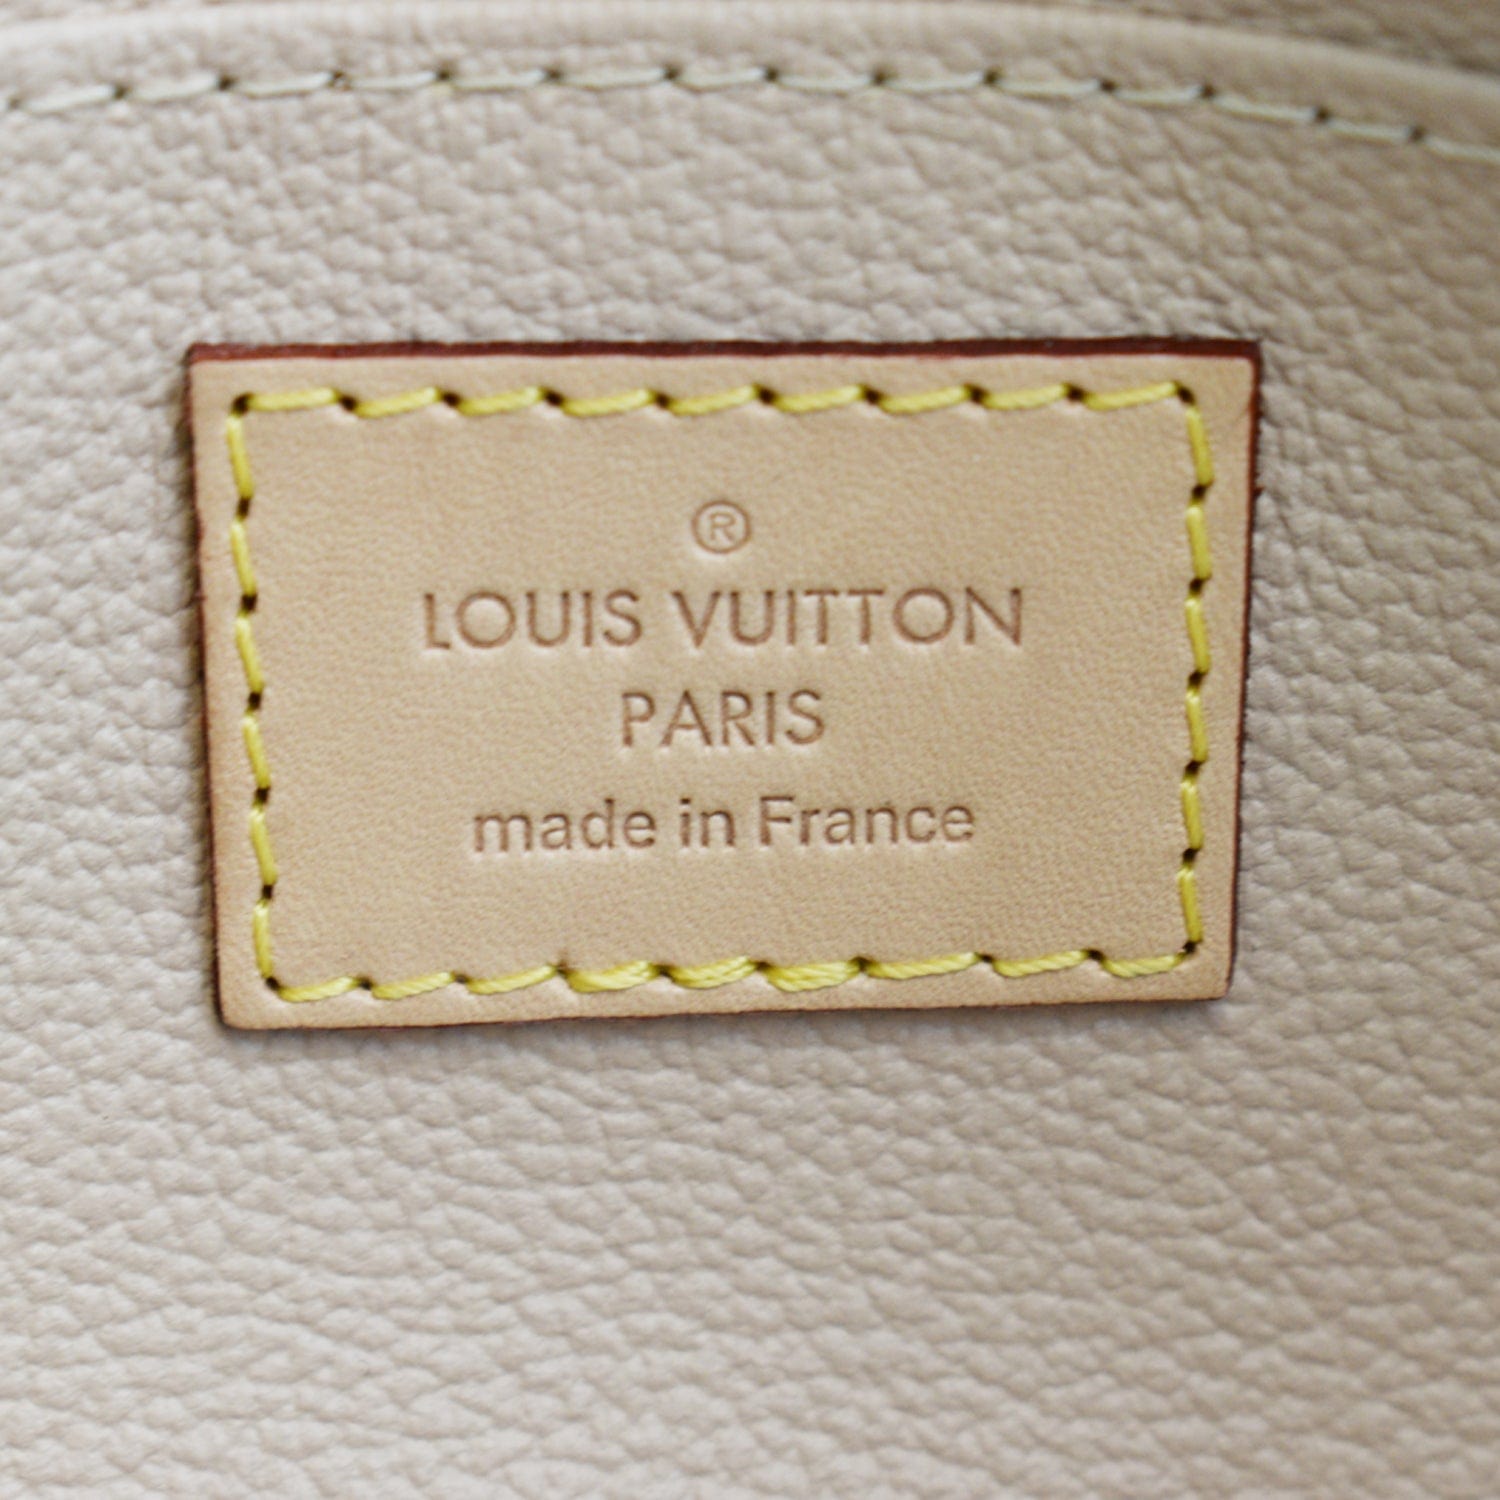 Authentic Louis Vuitton Envelope Style Dust Bag 5.25”x3” .